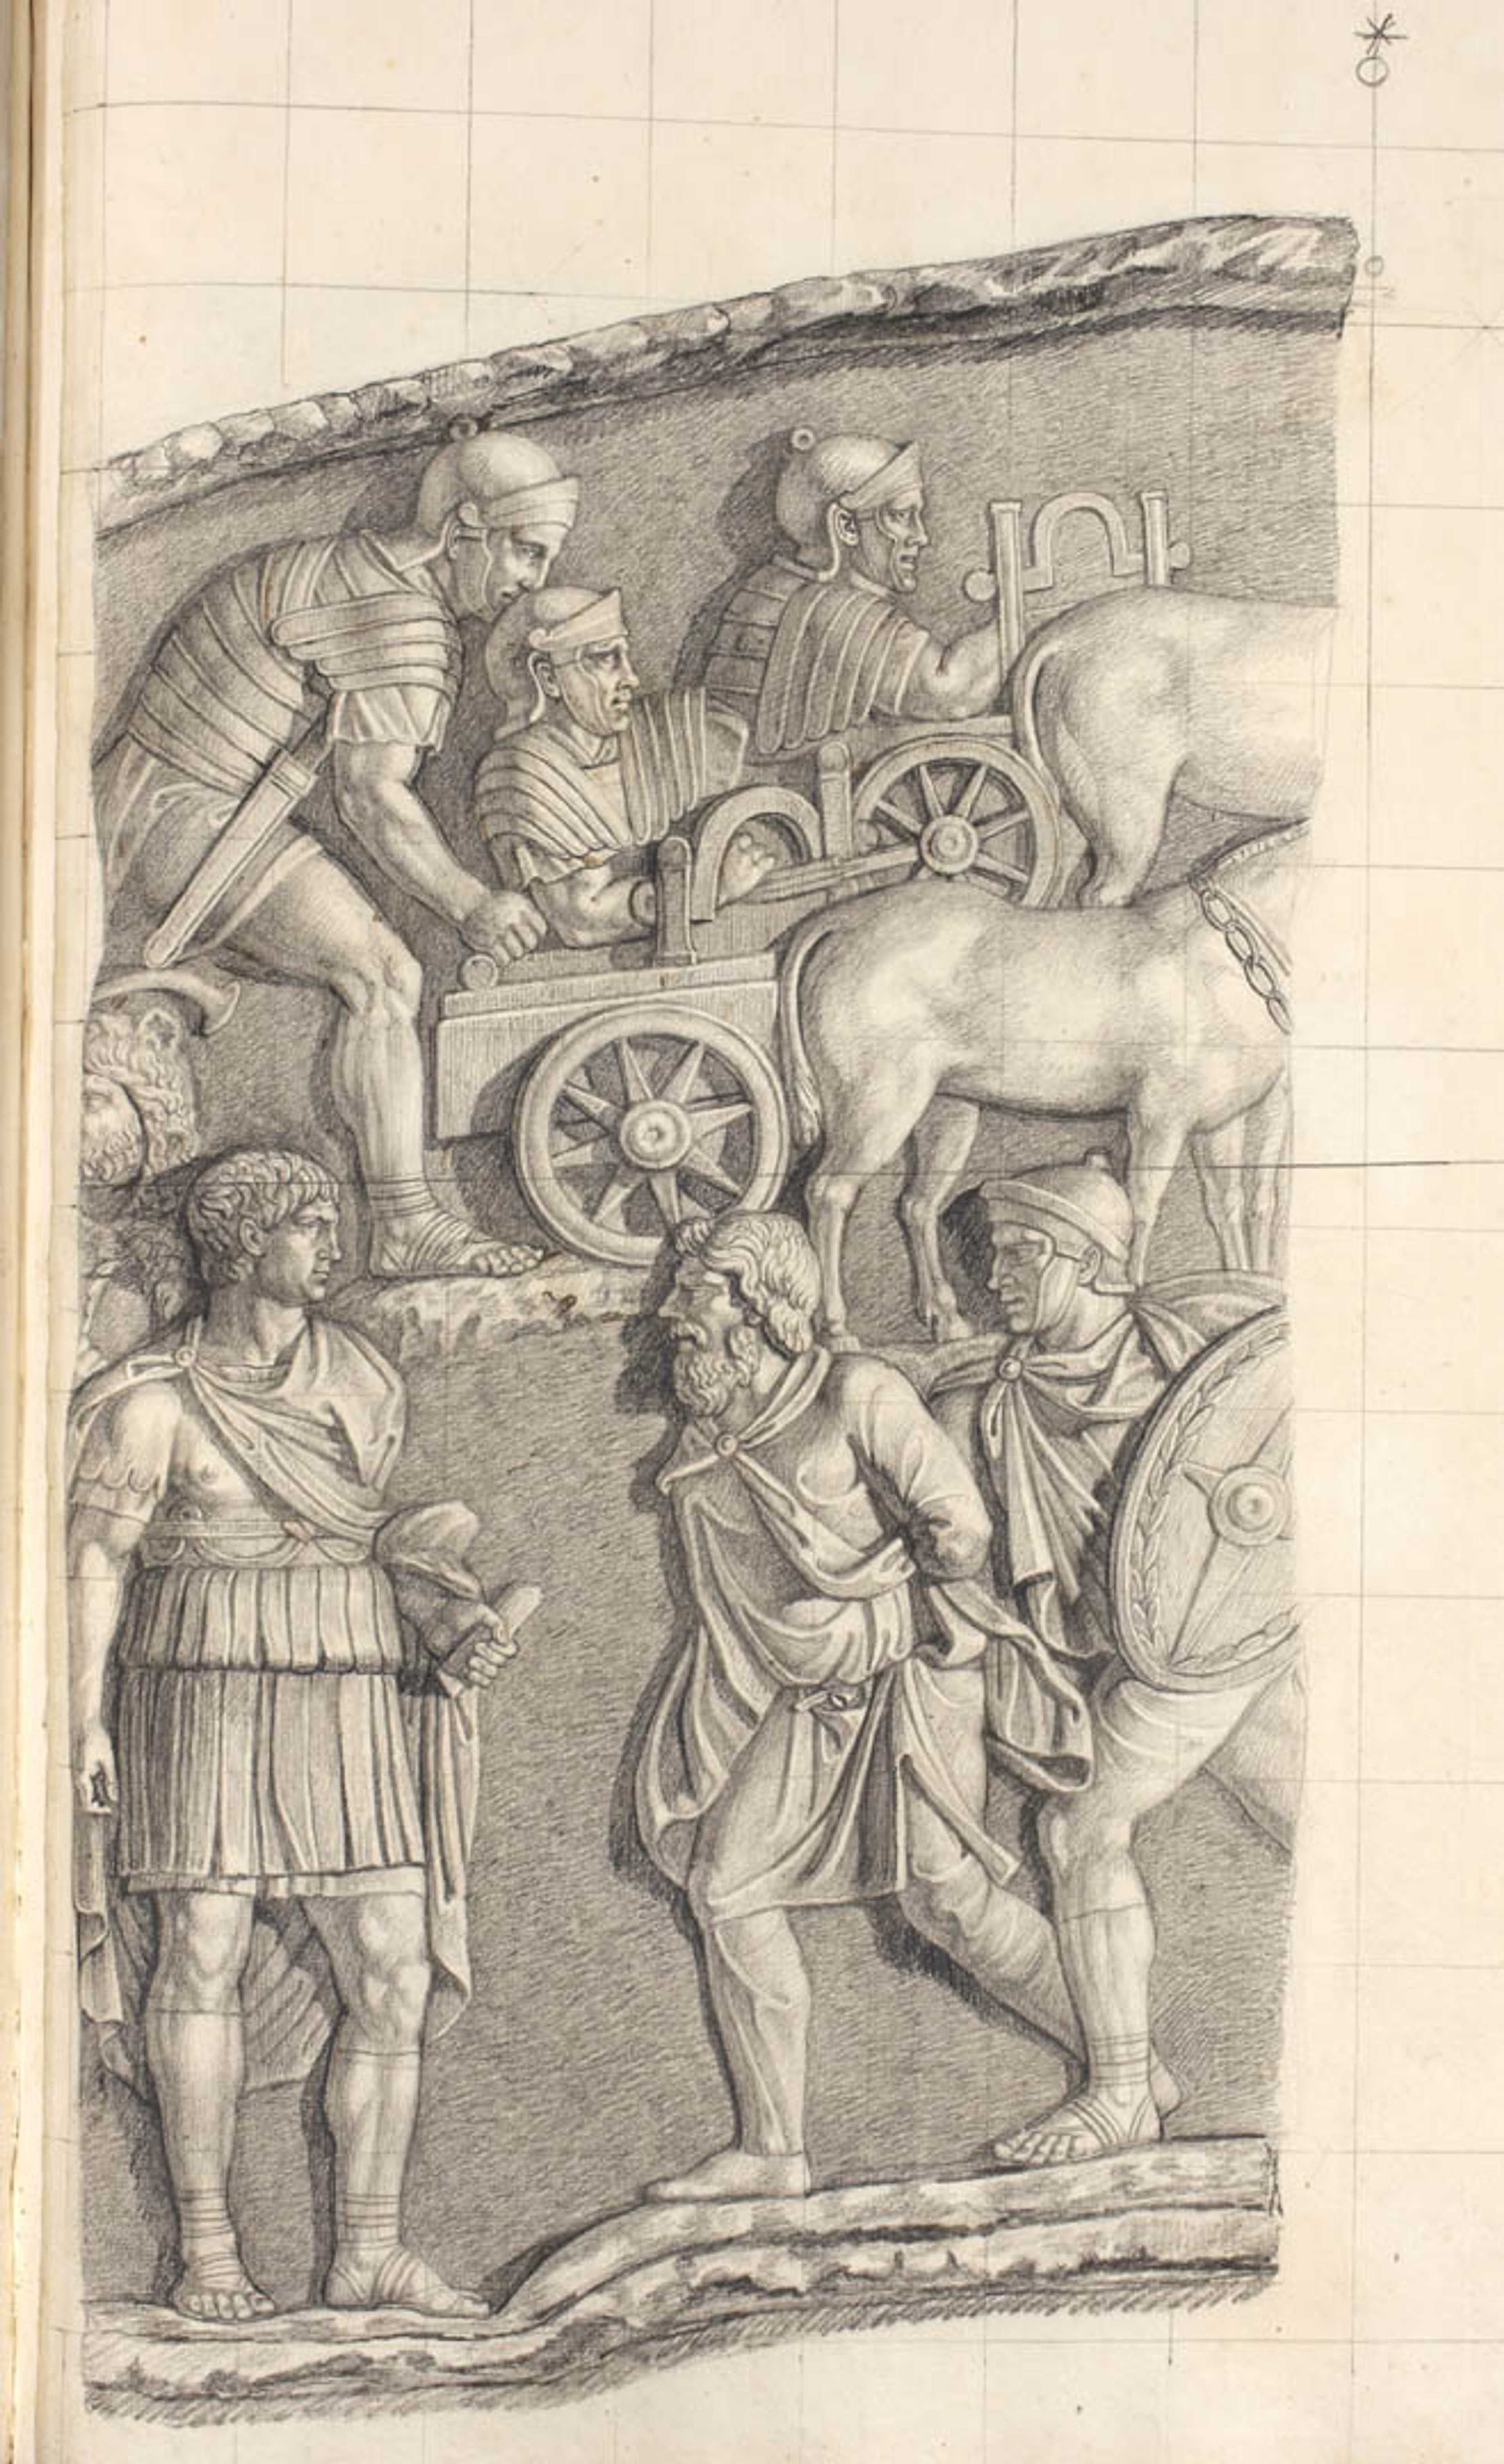 Traiano e un prigioniero; partenza dell'esercito per una battaglia